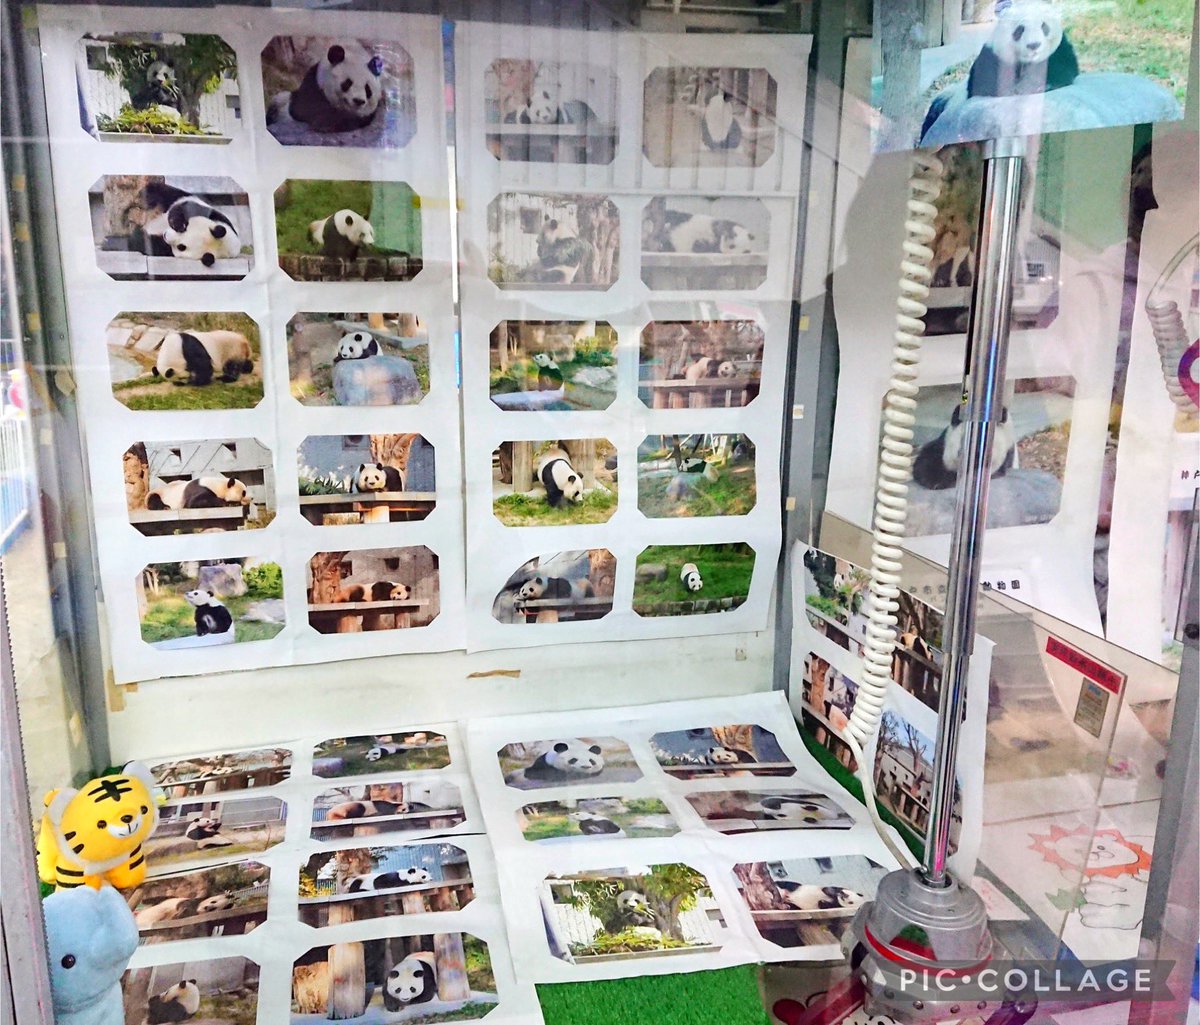 そういえば昨年のプリクラとかあるゲームセンターのUFOキャッチャーの中がタンタンの写真だらけだったんです🐼 最初驚きましたがこんな使い方も素敵ですね✨️ 王子動物園の工夫の仕方が好き❣️ 写真展して欲しいな～ #王子動物園 #タンタン #神戸